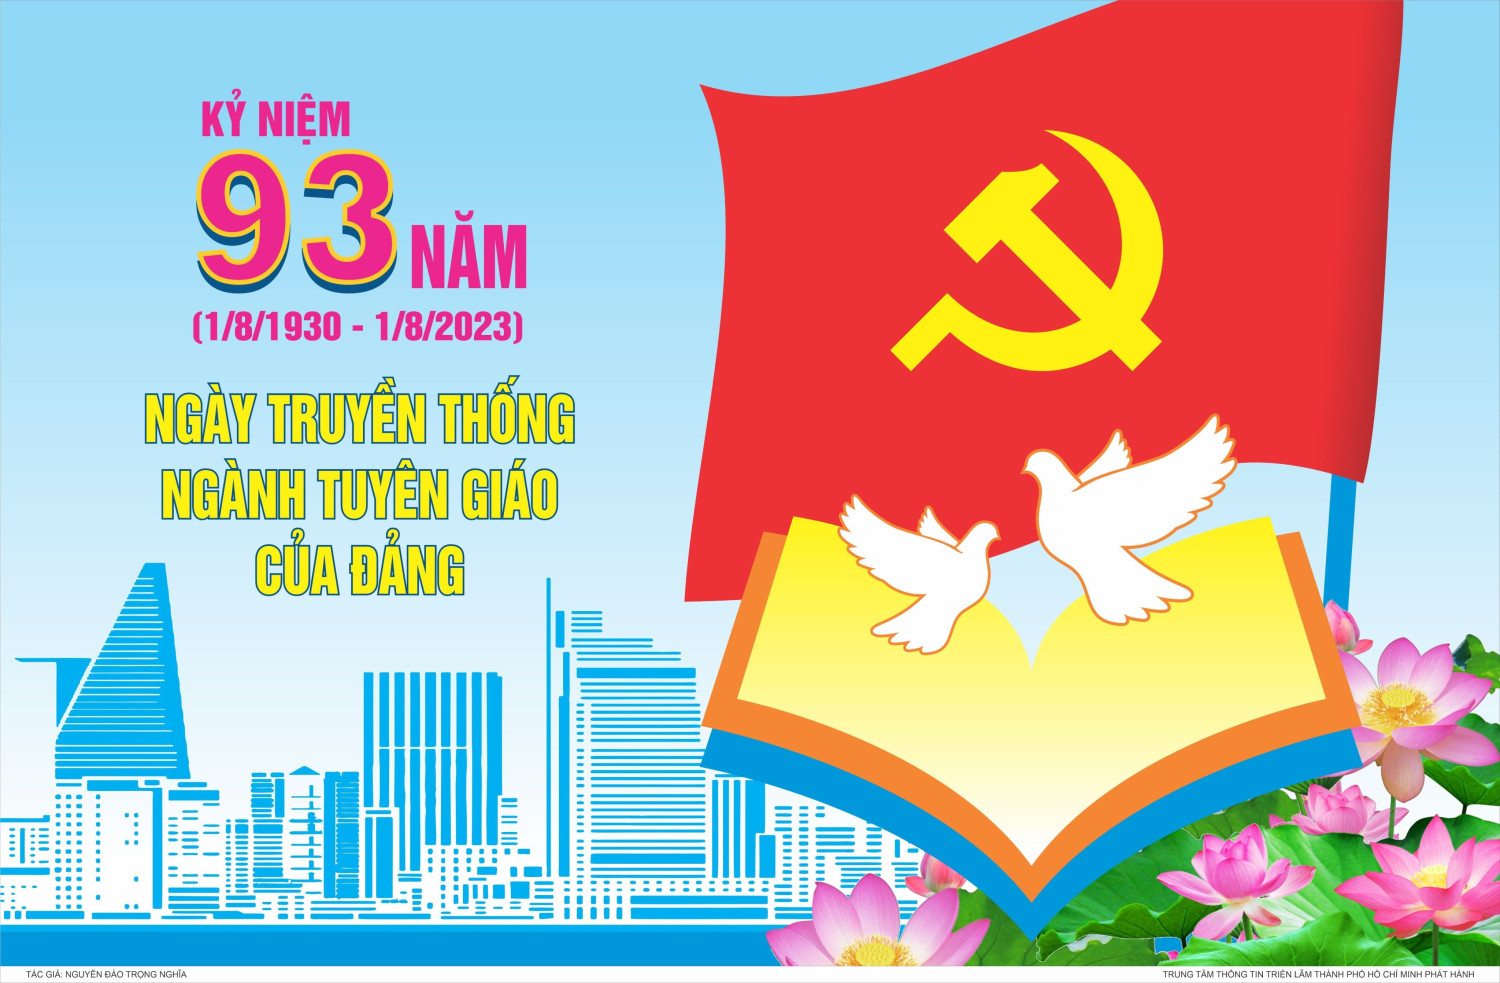 93 năm Ngày truyền thống ngành Tuyên giáo của Đảng (01/8/1930 - 01/8/2023)